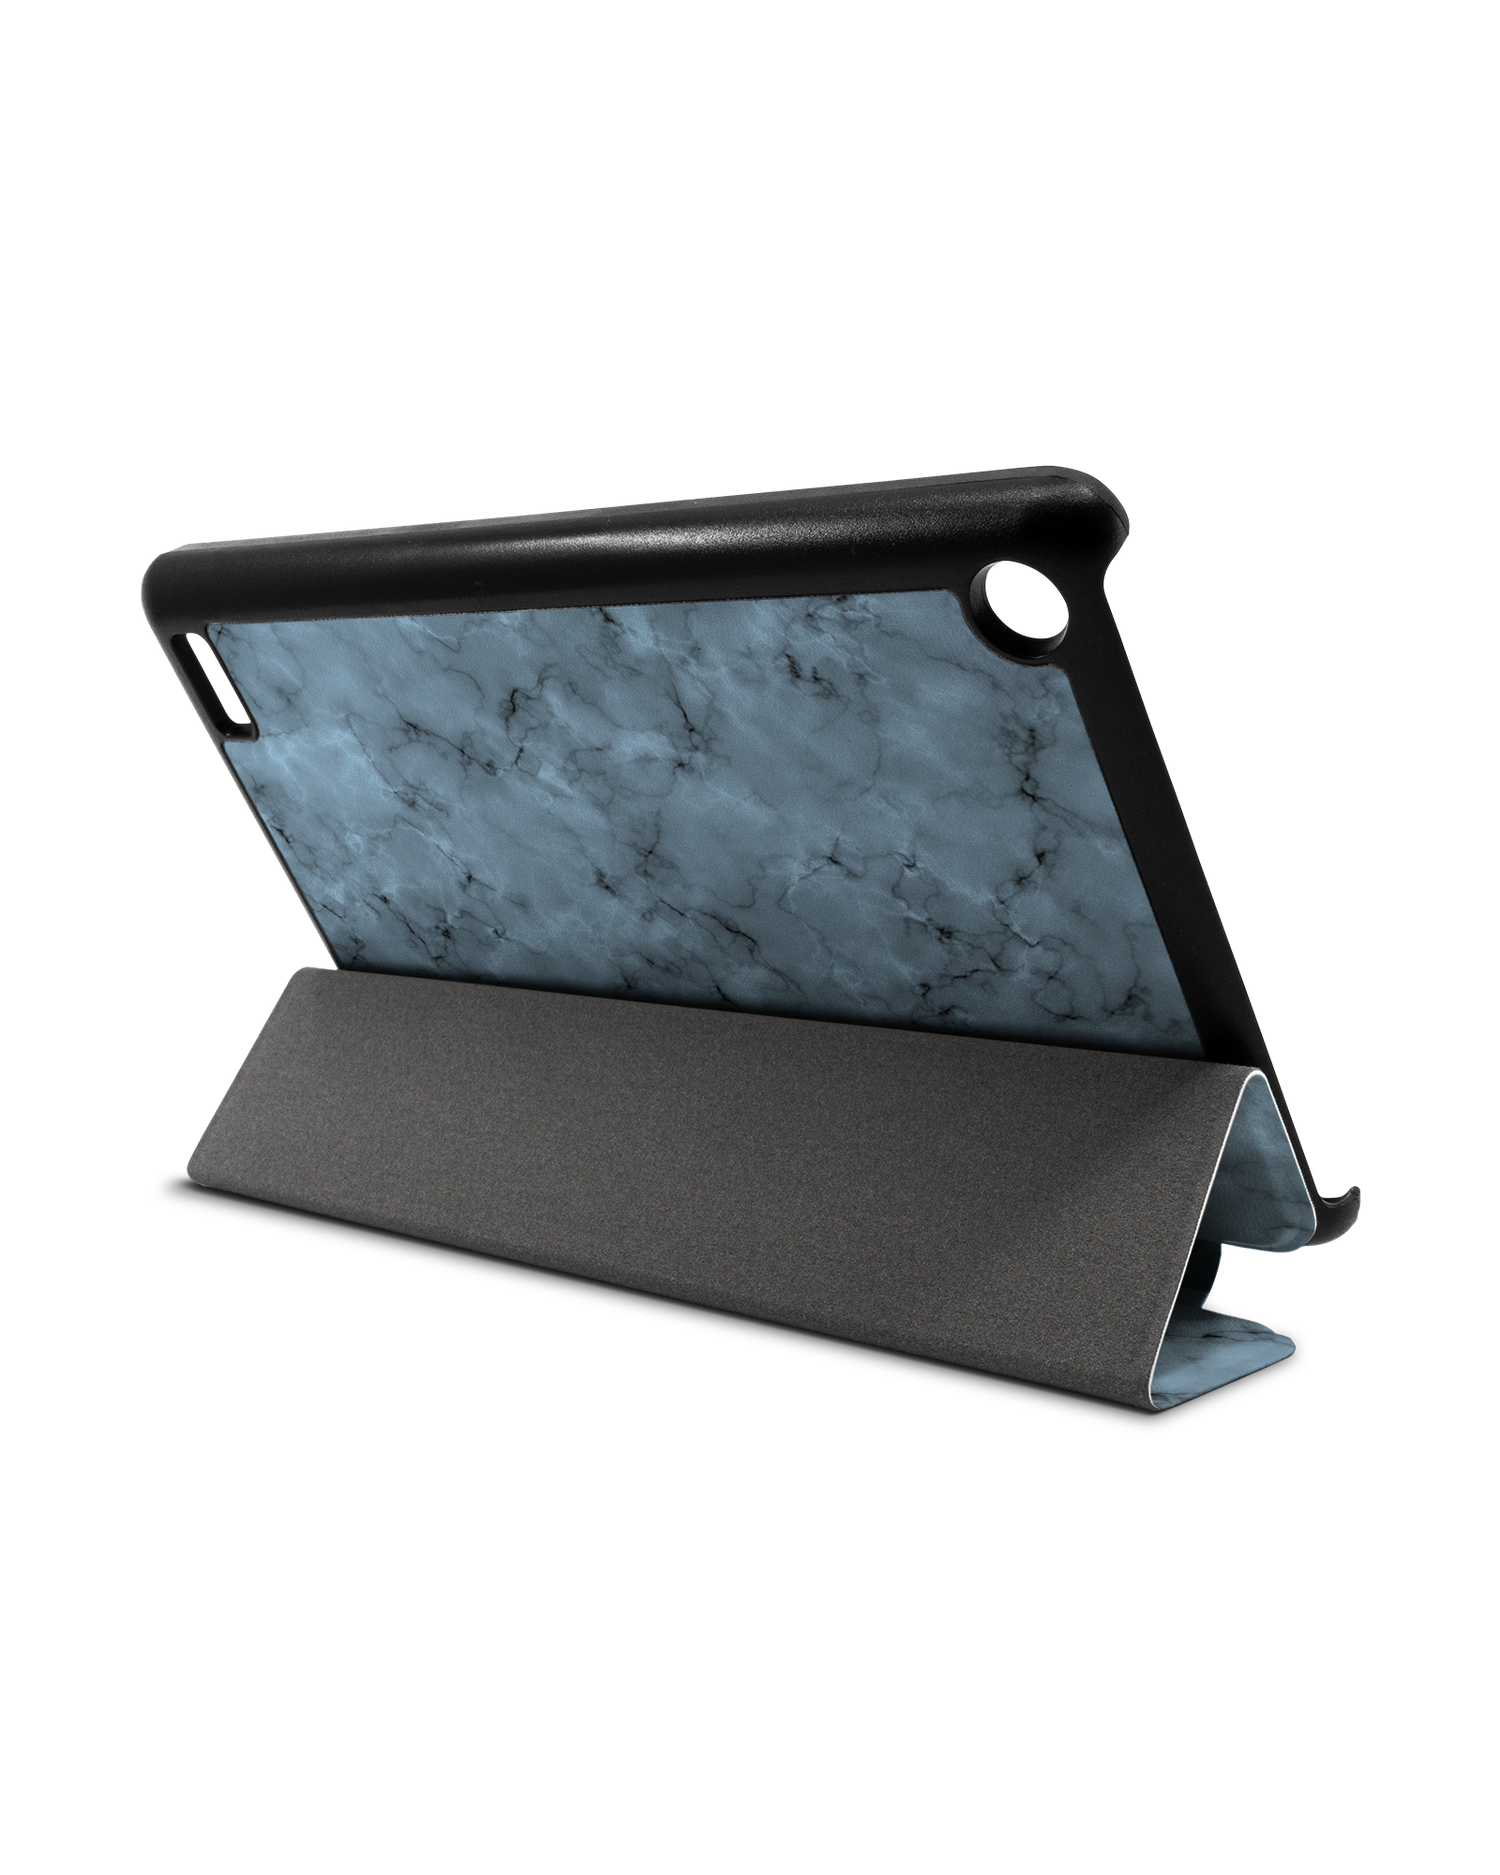 Blue Marble Tablet Smart Case für Amazon Fire 7: Aufgestellt im Querformat